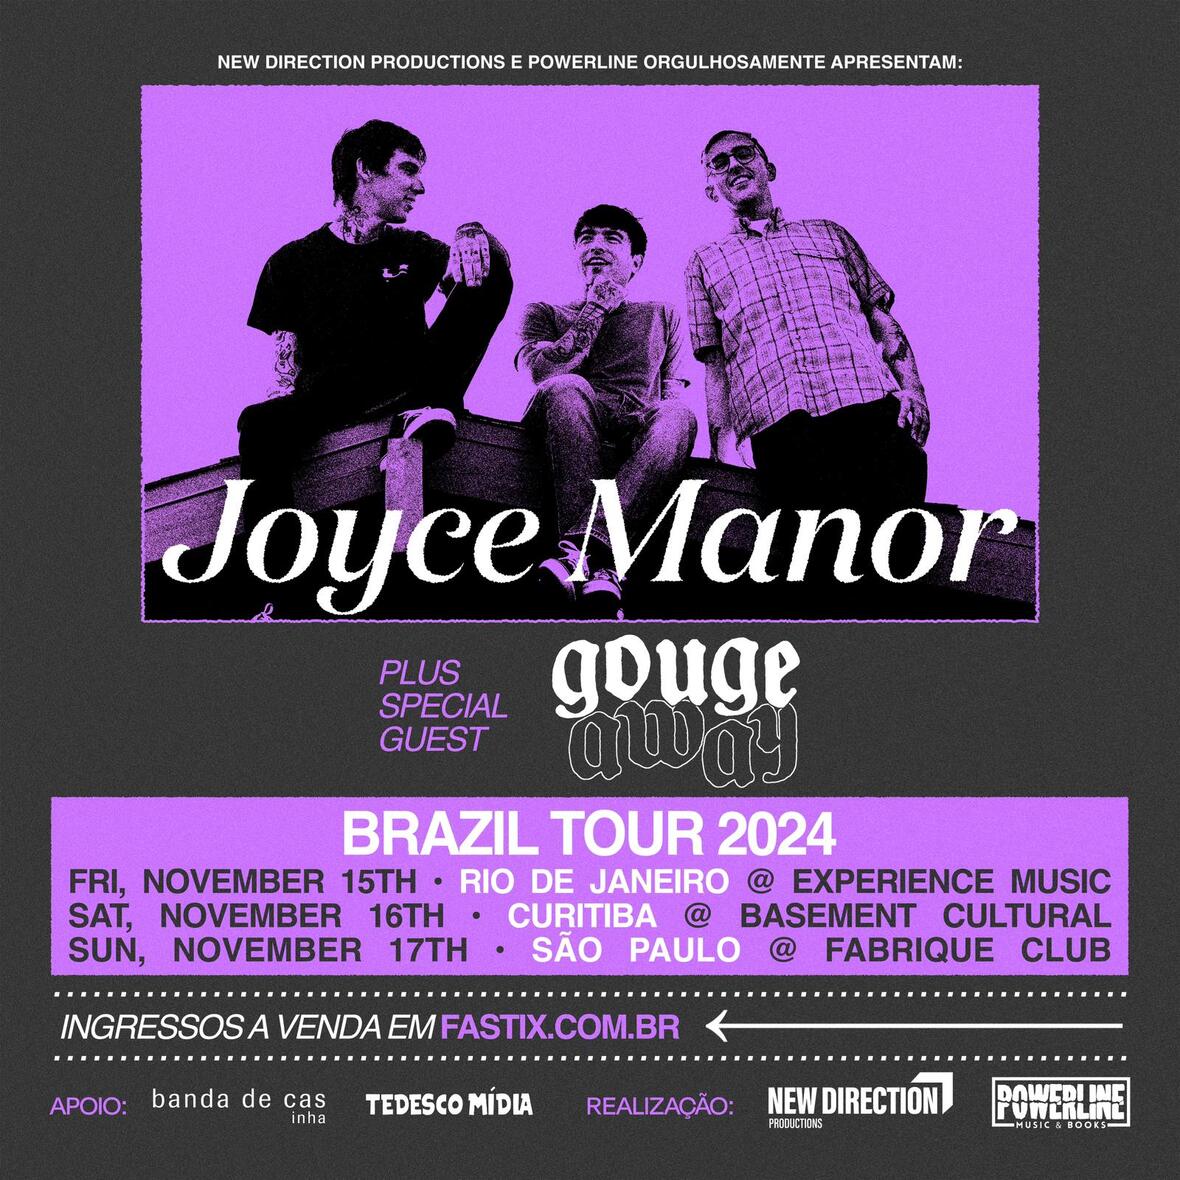 Turnê inédita no Brasil: Joyce Manor e Gouge Away, juntos, em novembro!